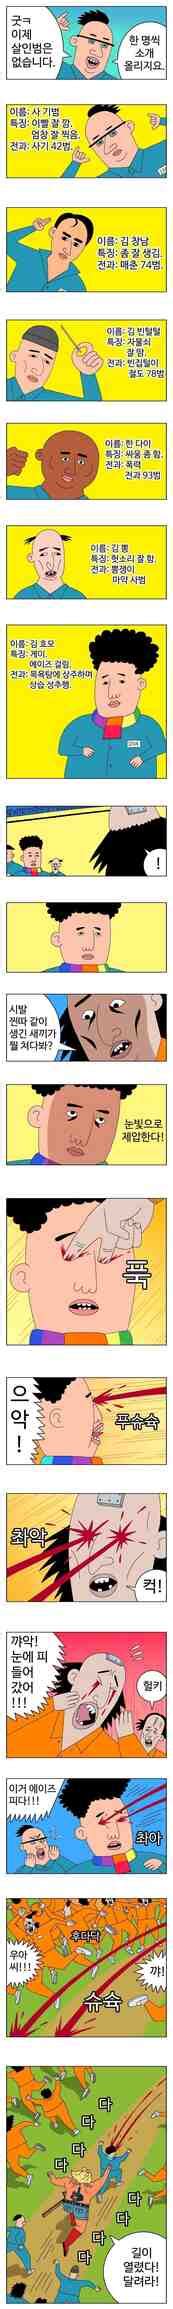 싱글벙글 귀귀만화에 나온 똥꼬충 핫이슈 개념글 저장소